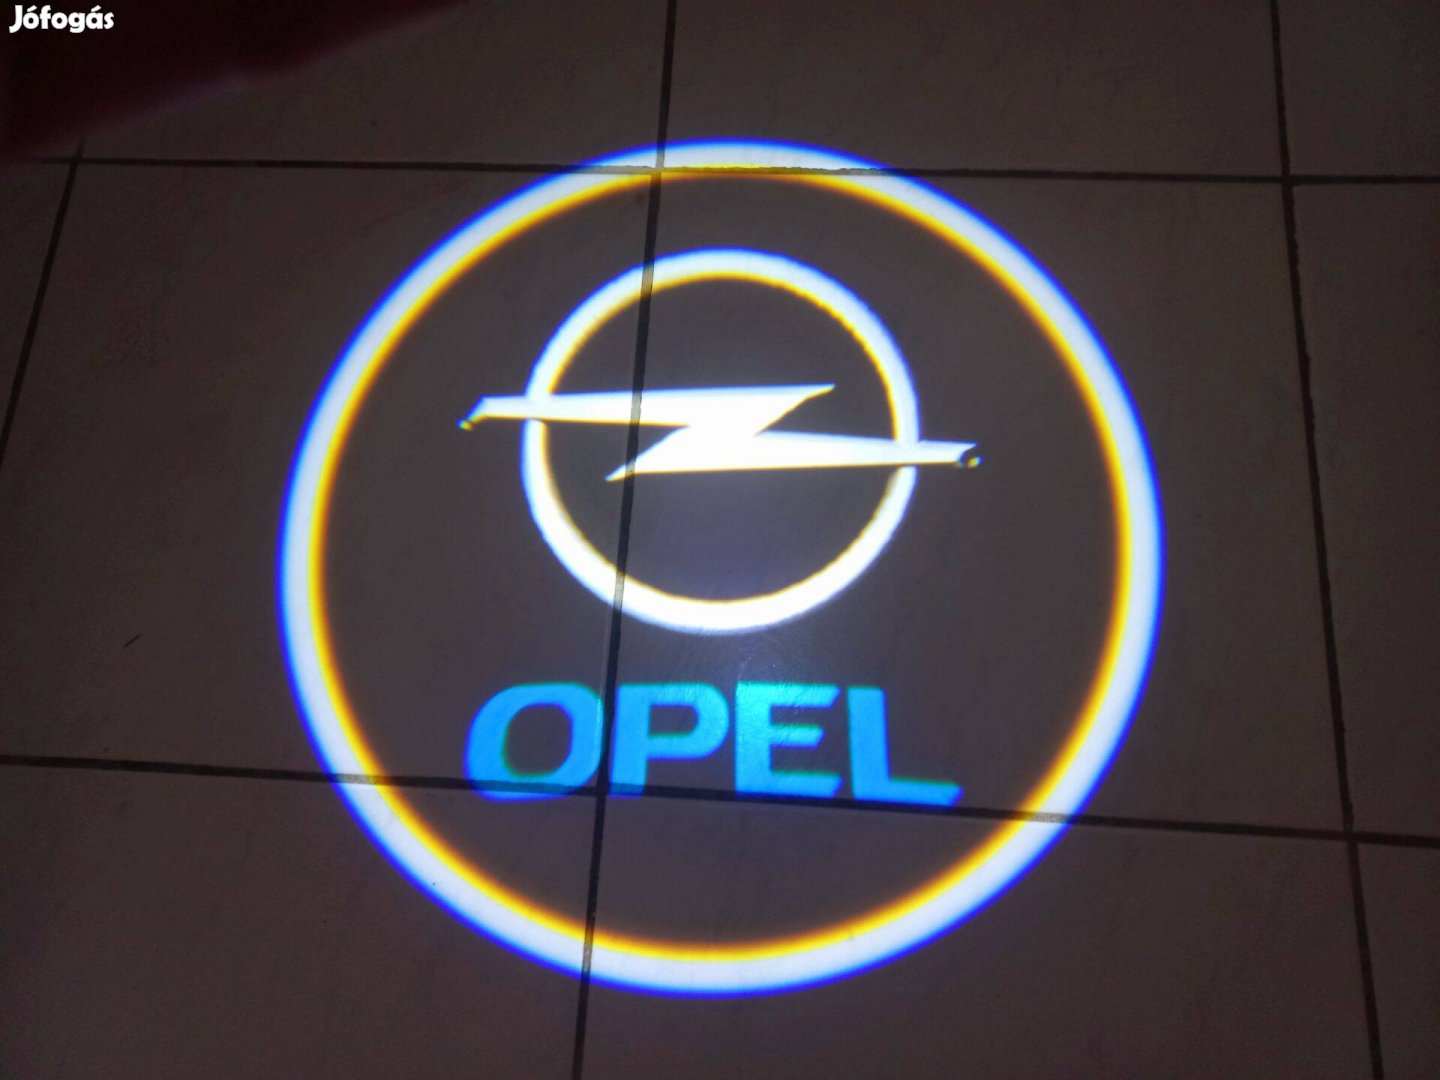 Ajtó led Opel világítás 4 doboz (8db)